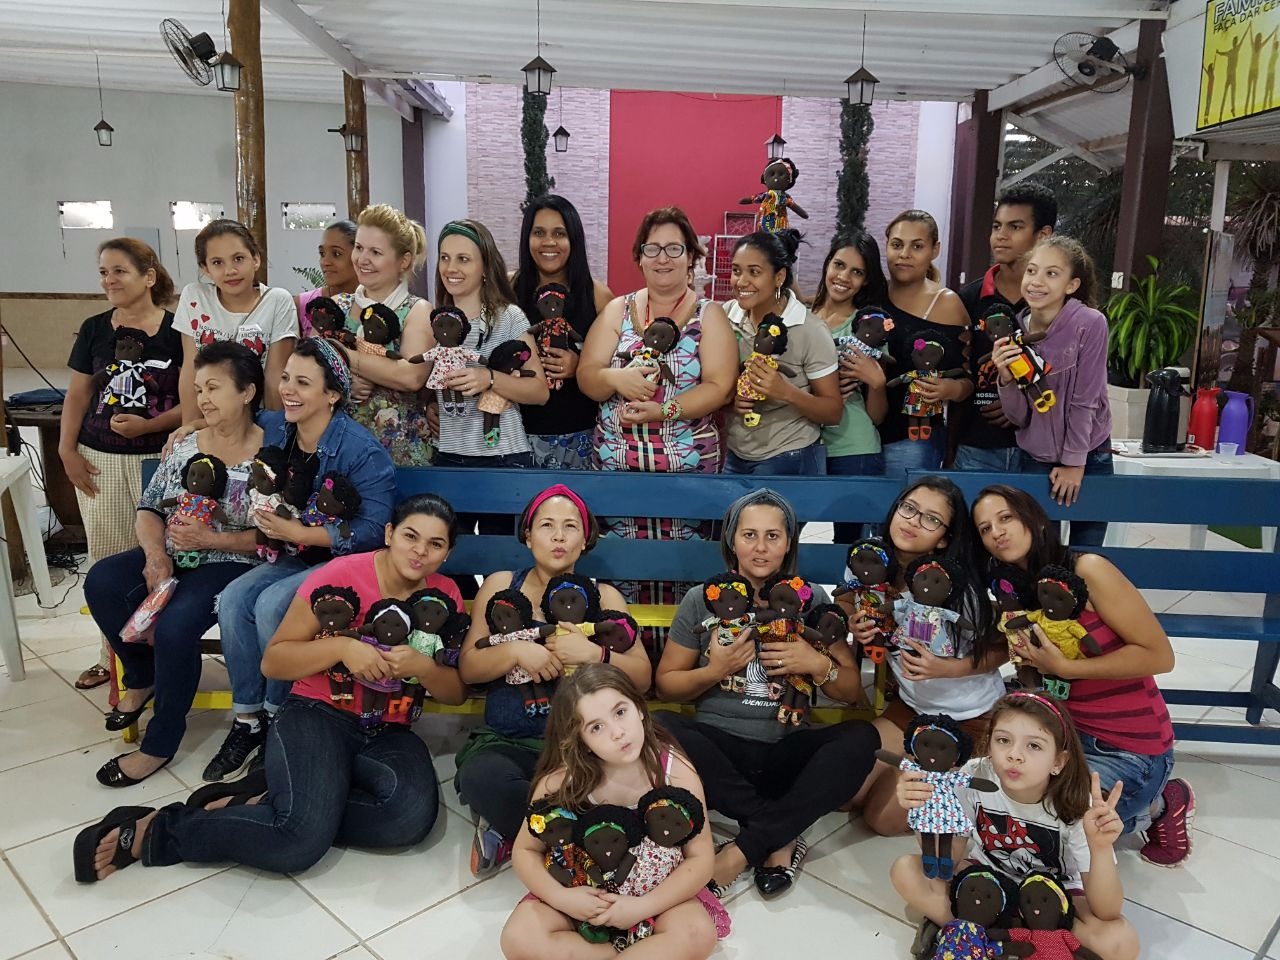 O curso foi realizado de graça e as participantes ajudaram na confecção de bonecas para doações. Foto: Divulgação Whatsapp